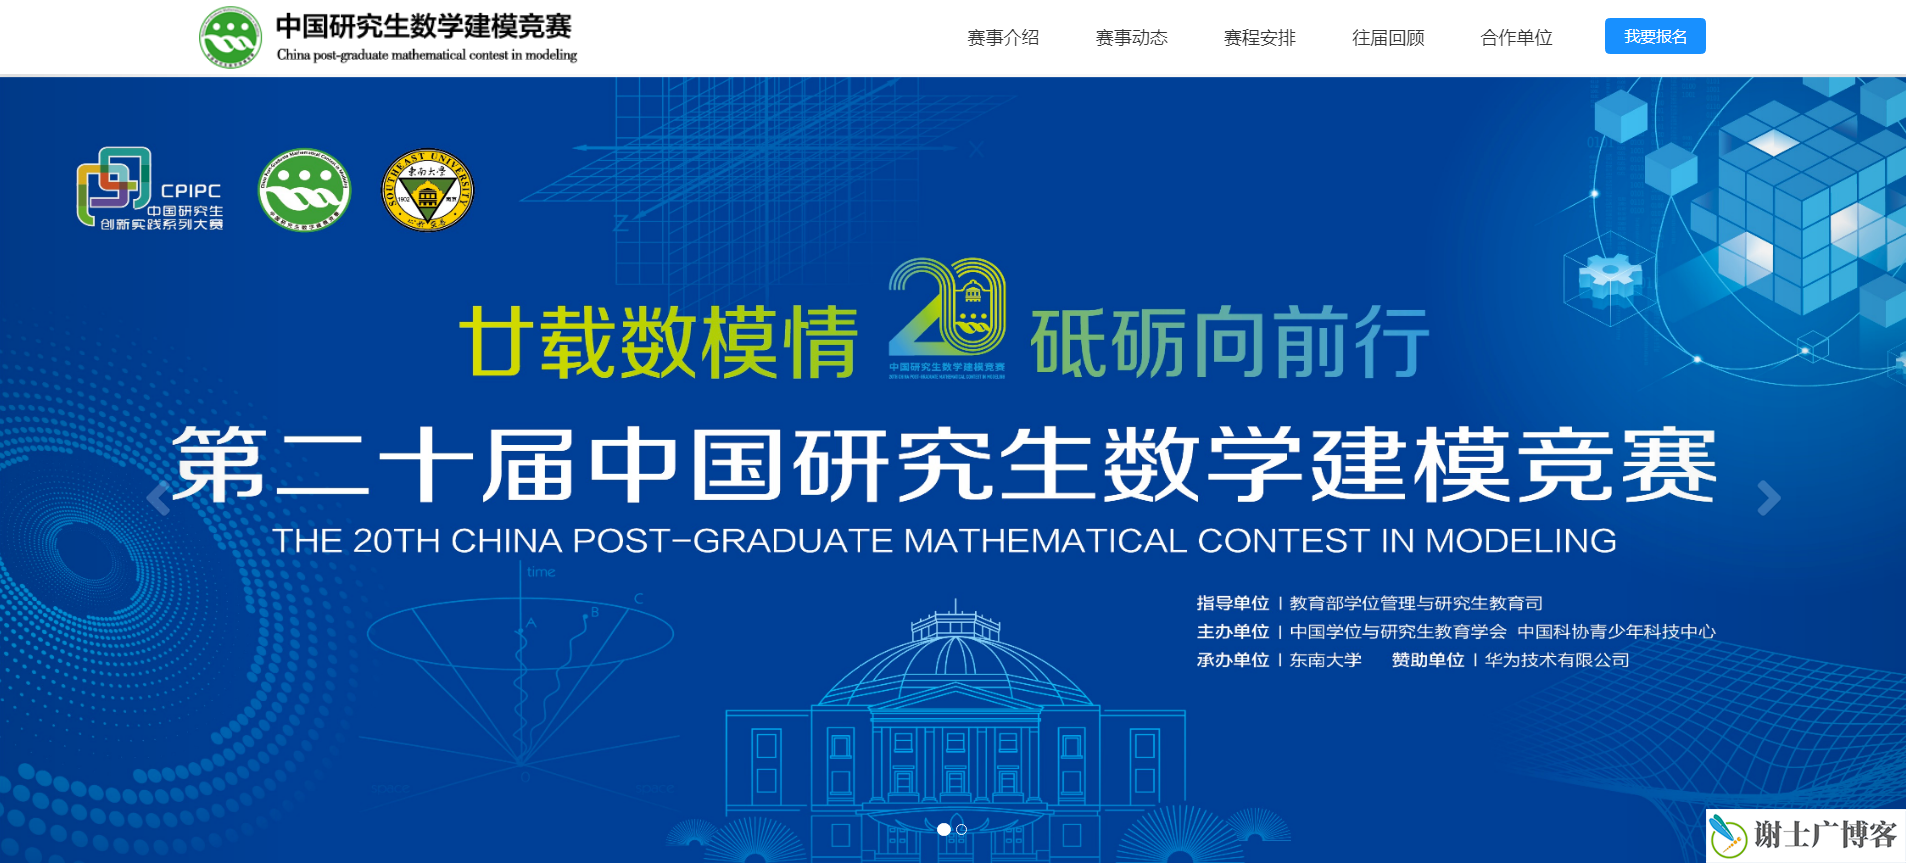 2023 年 “华为杯” 第二十届中国研究生数学建模竞赛一等奖 总结和复盘